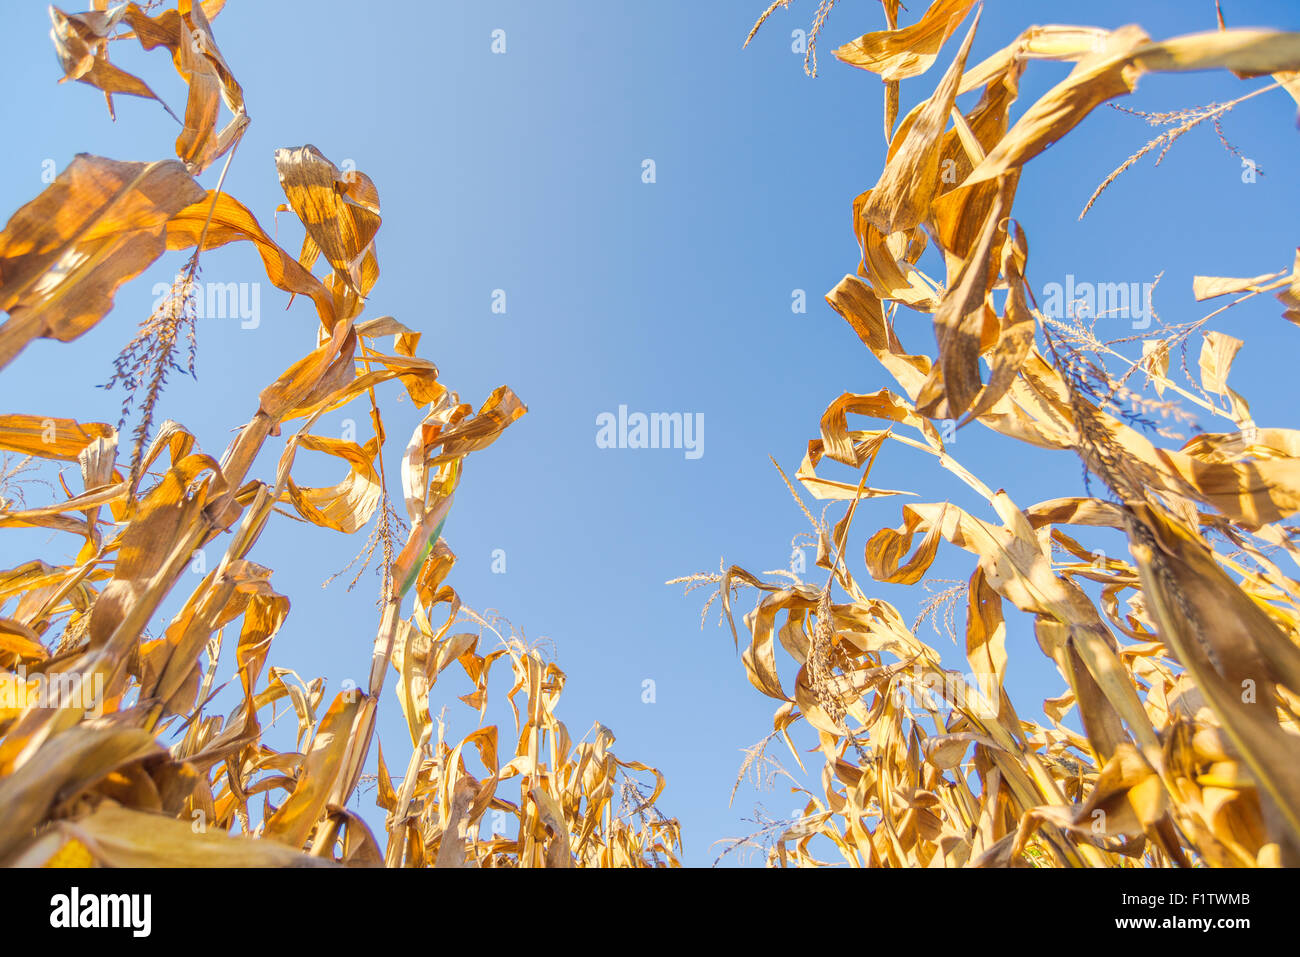 Les plantes cultivées en maïs mûr prêt récolte champ de maïs, low angle Banque D'Images